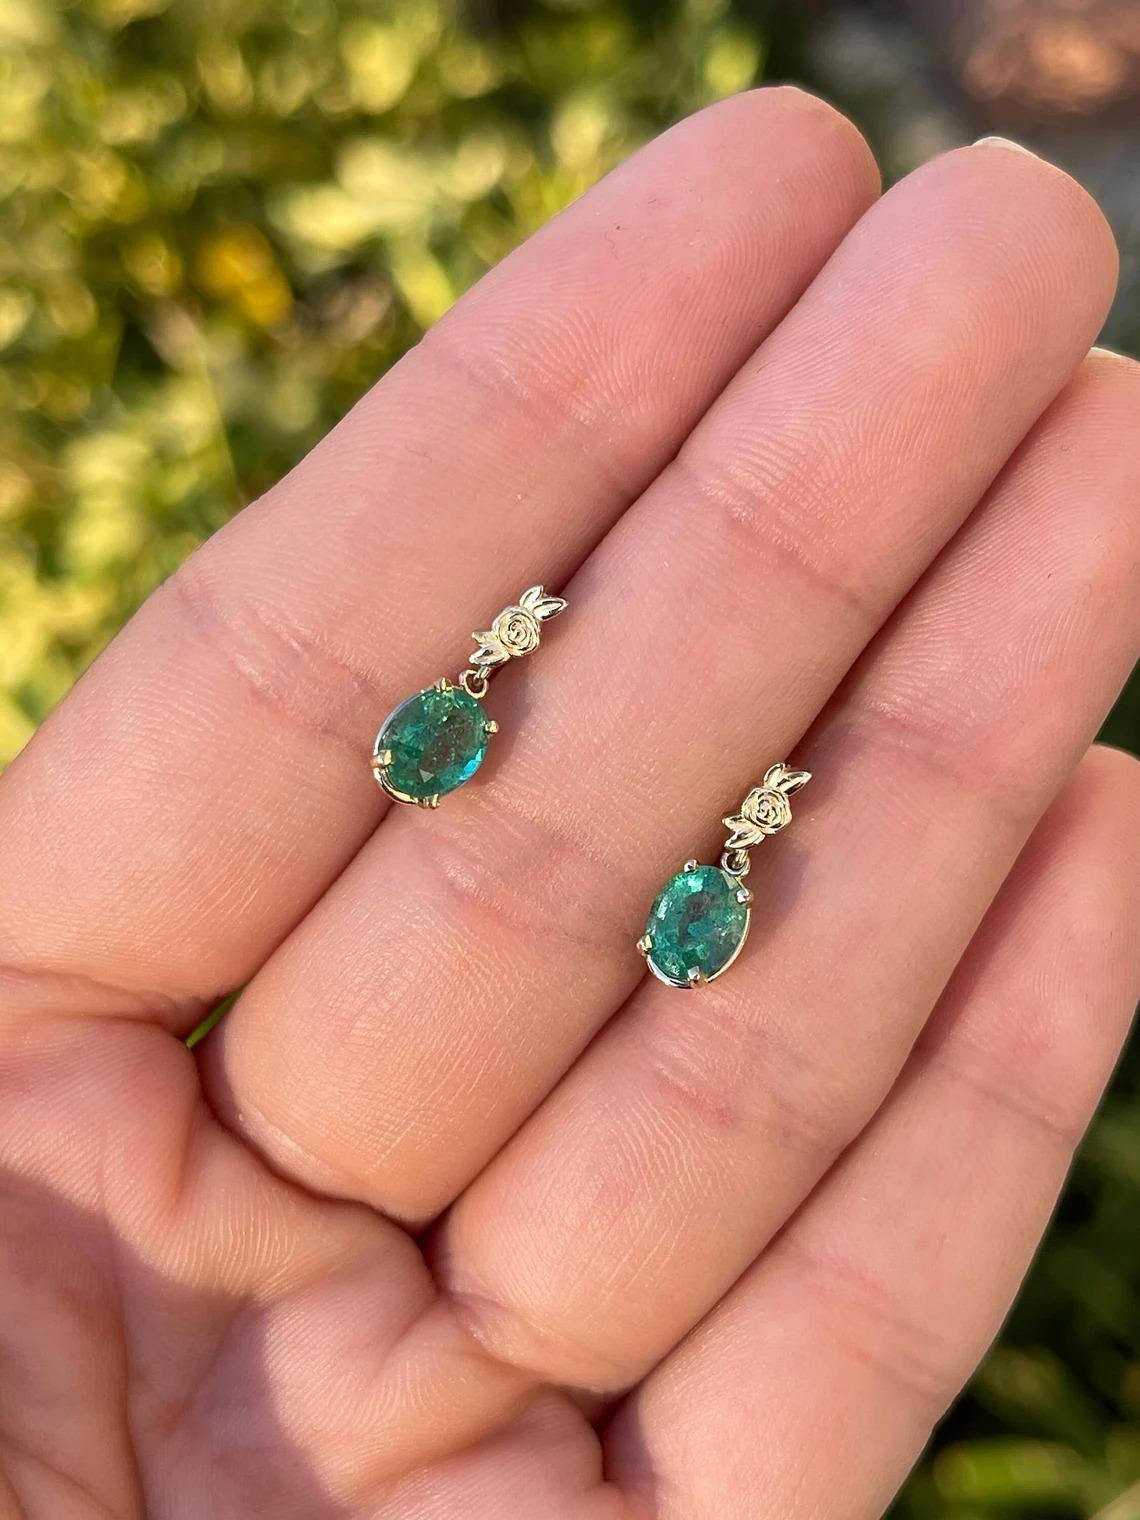 Ausgestellt ist ein atemberaubendes Paar Ohrringe mit Smaragd und Diamanten, baumelnd. Zwei wunderschöne ovale Smaragde aus Sambia mit einem Gesamtgewicht von 2,0 Karat, akzentuiert durch roségoldene Details in einer tropfenförmigen und baumelnden